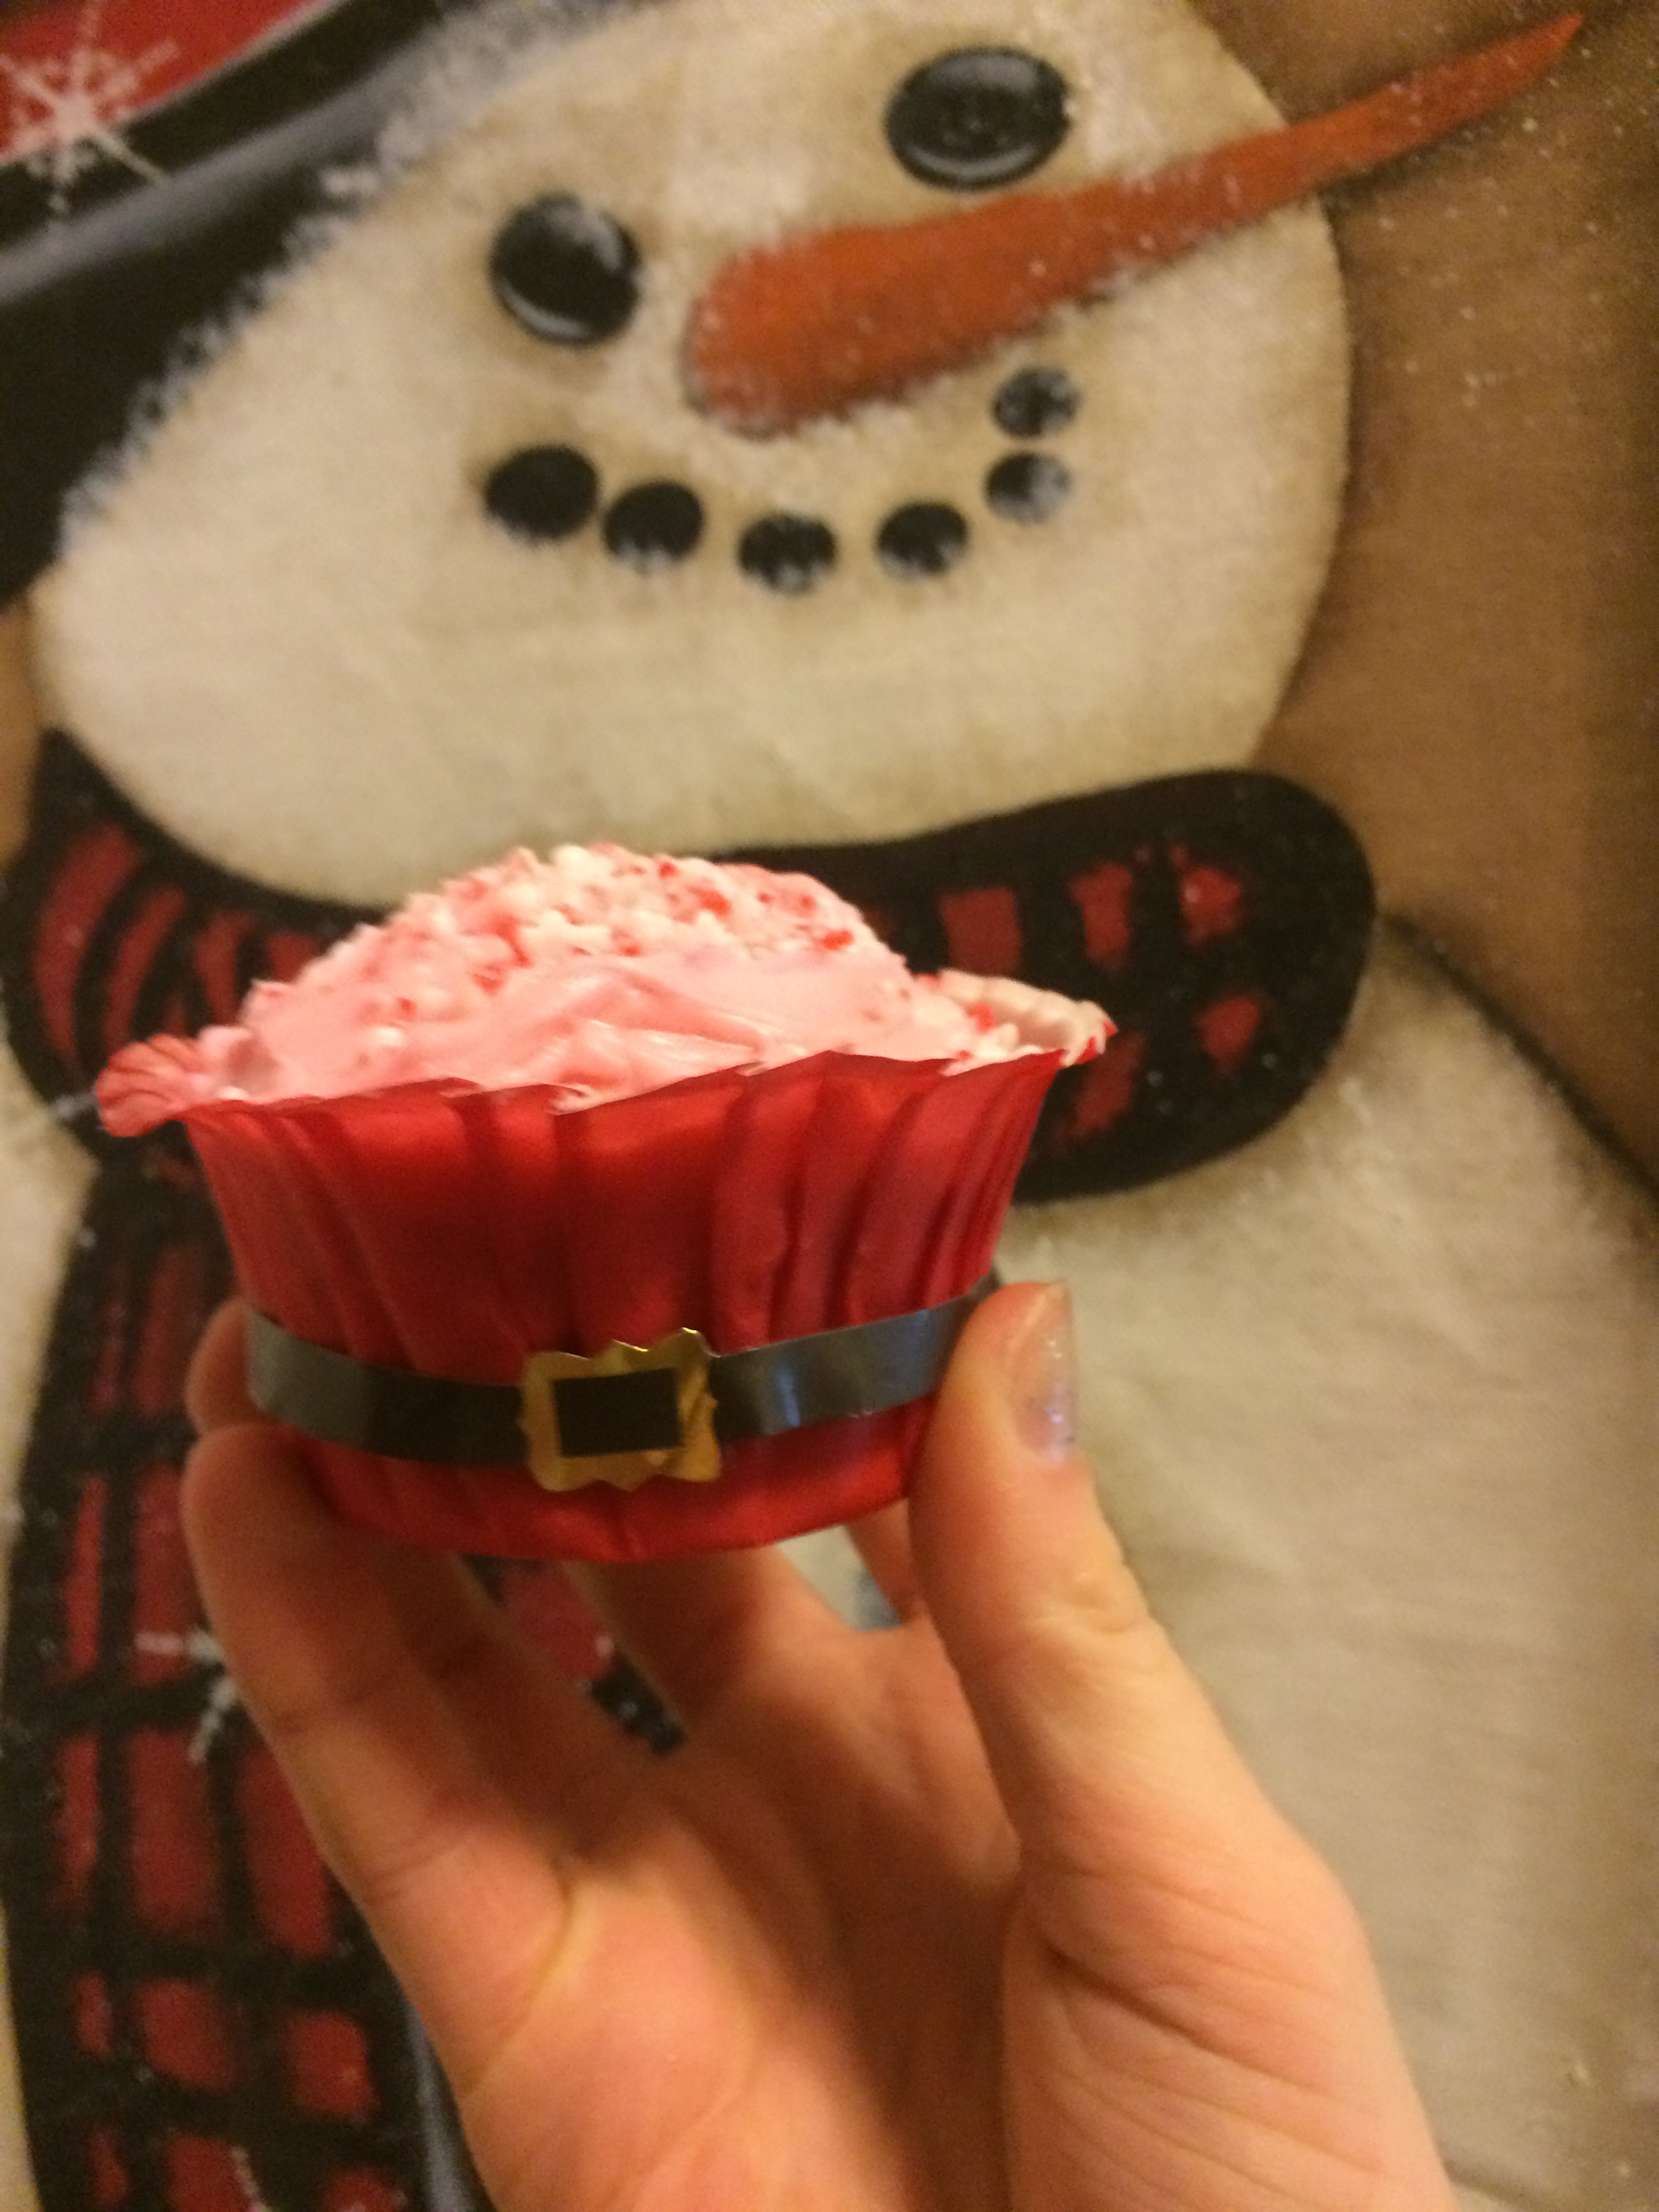 A yummy Christmas cupcake